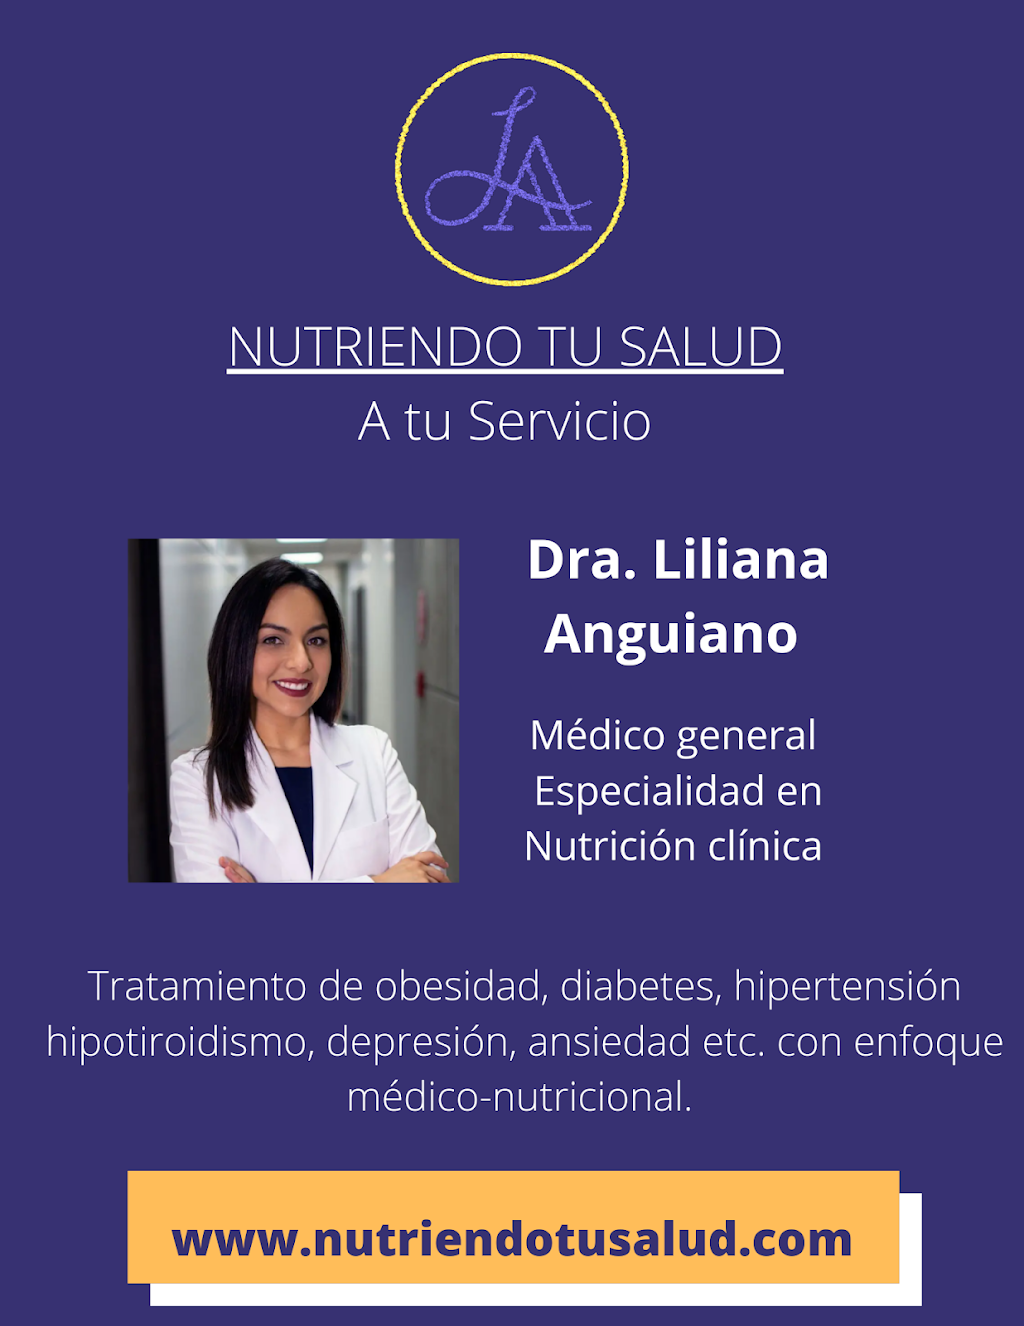 Dra. Liliana Anguiano Nutriendo tu Salud | Ave. Las Palmas #4710 22106, A 3, altos de ISSSTECALI, 22106 Tijuana, B.C., Mexico | Phone: 664 307 4760